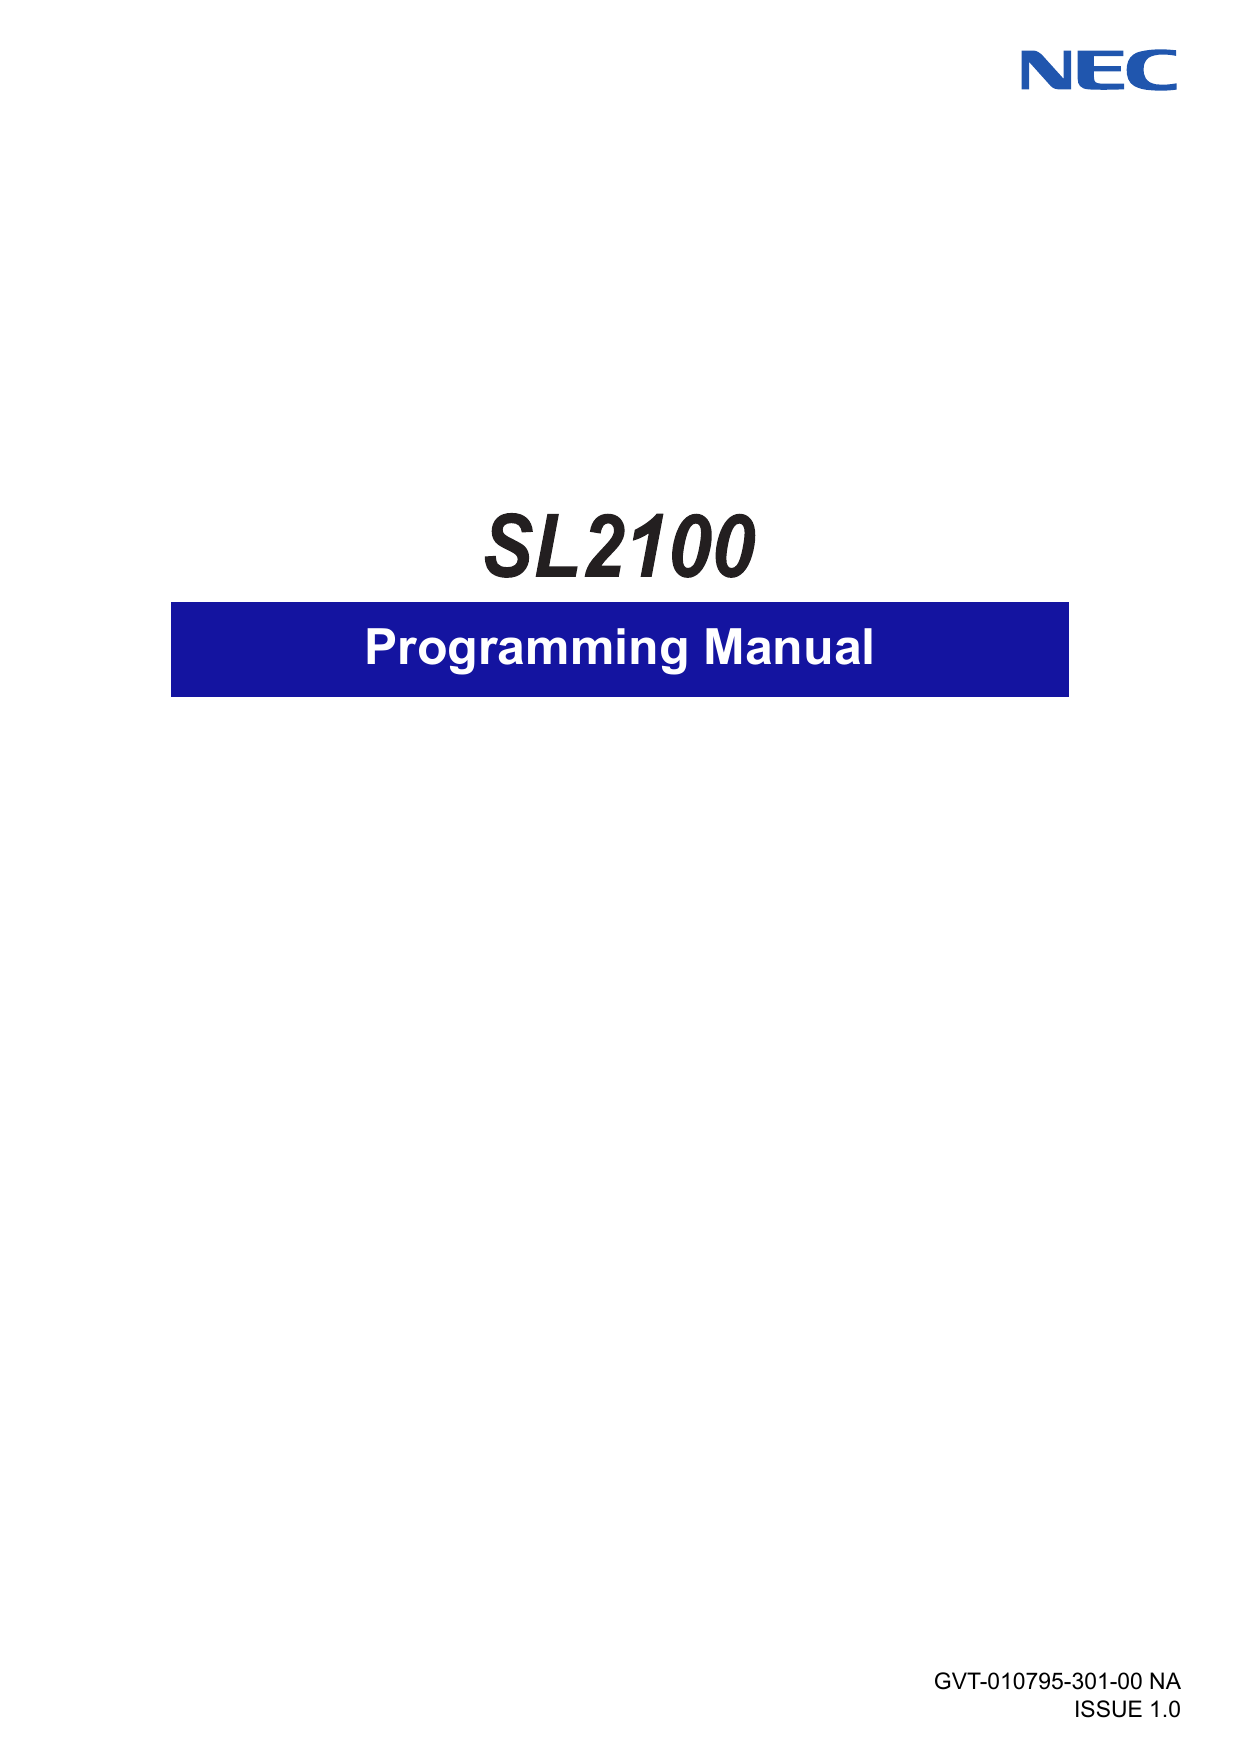 nec sl1100 programming software